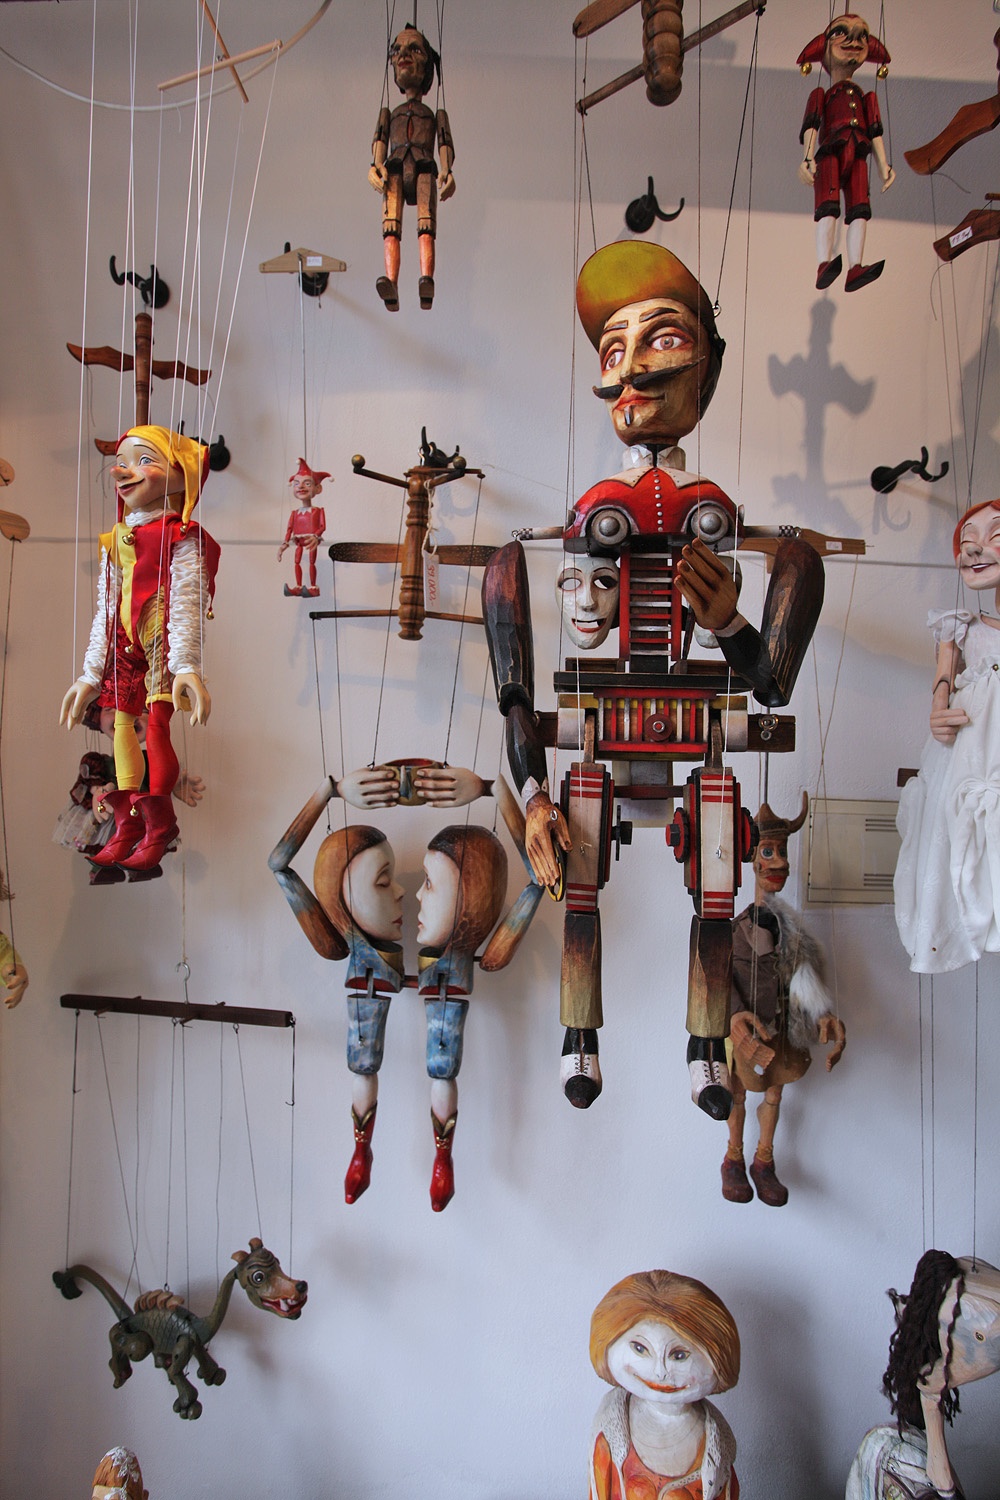 bill-hocker-puppets-prague-czech-republic-2013